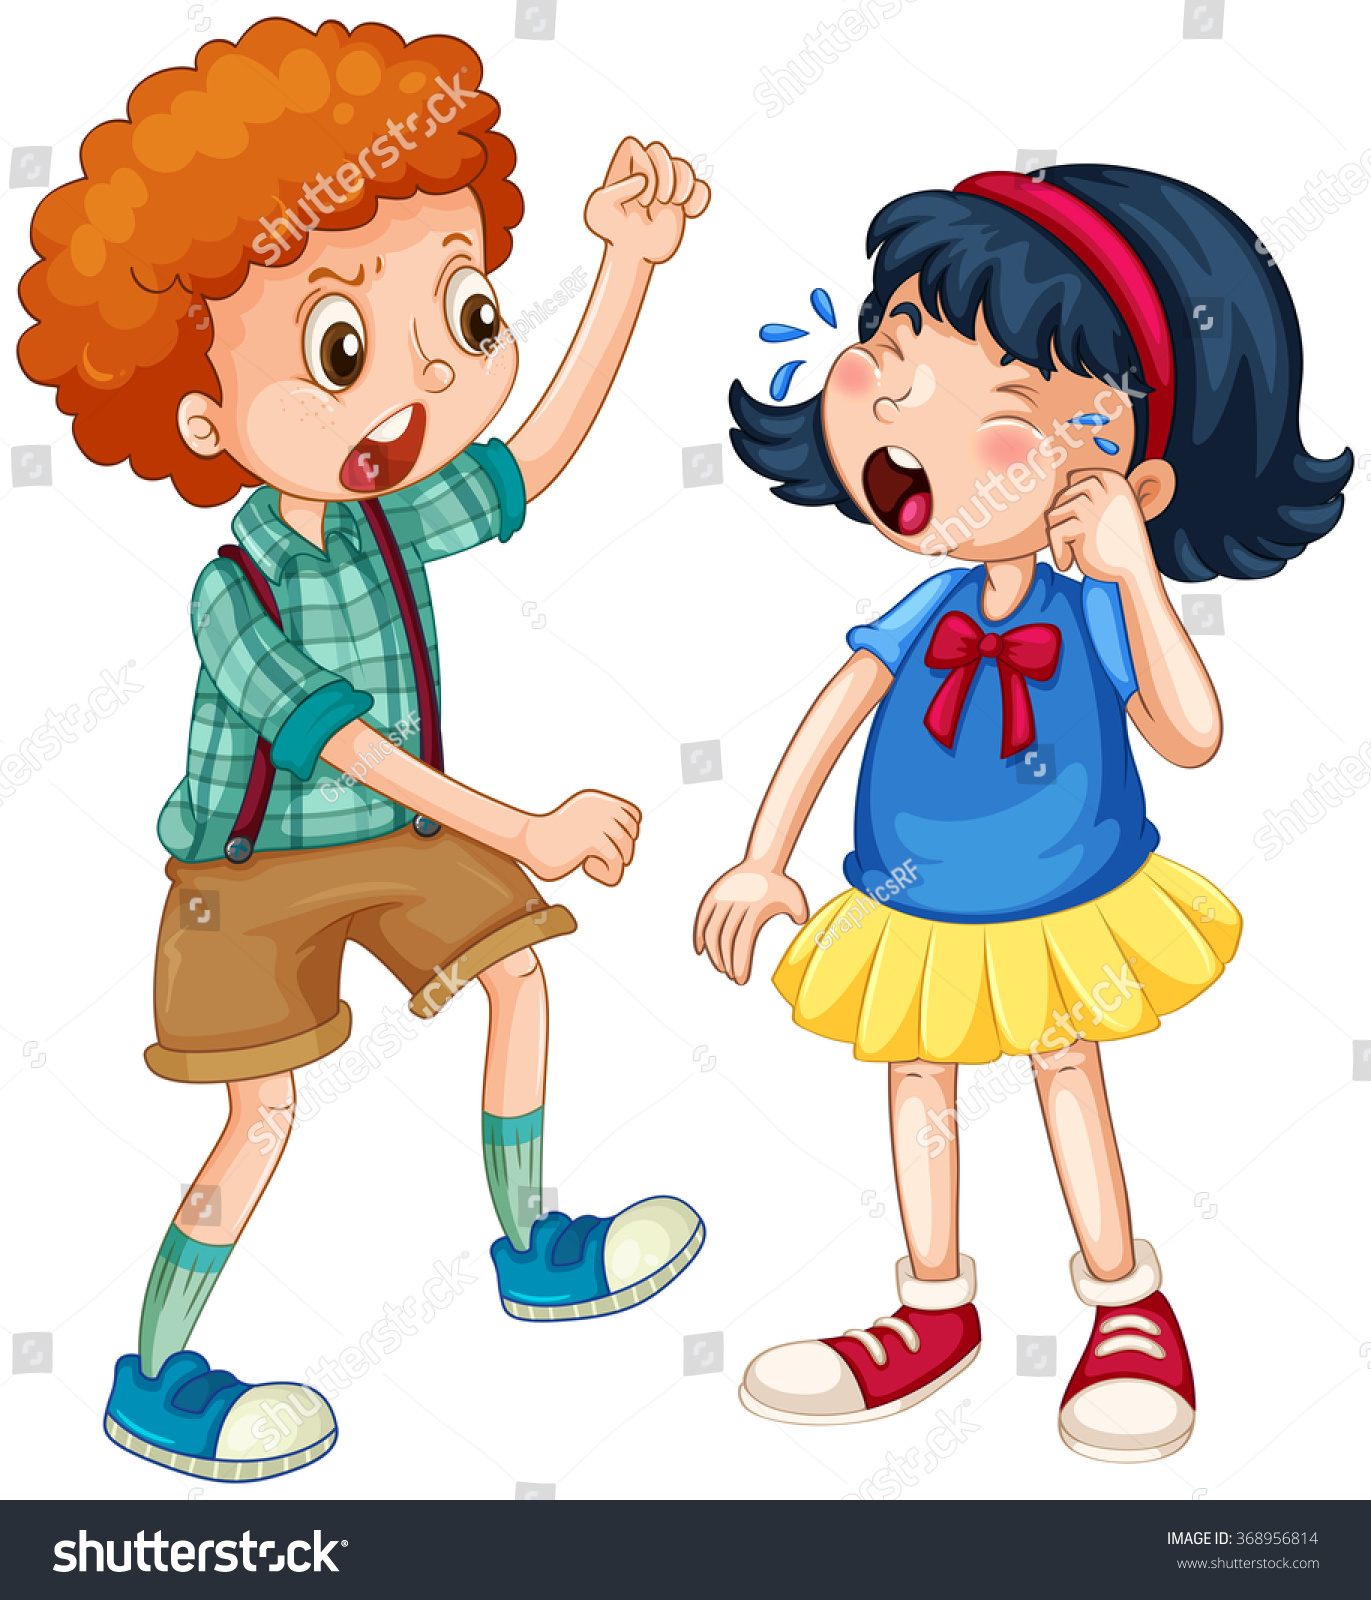 Boy Teasing Little Girl Illustration Stock Vector -4479